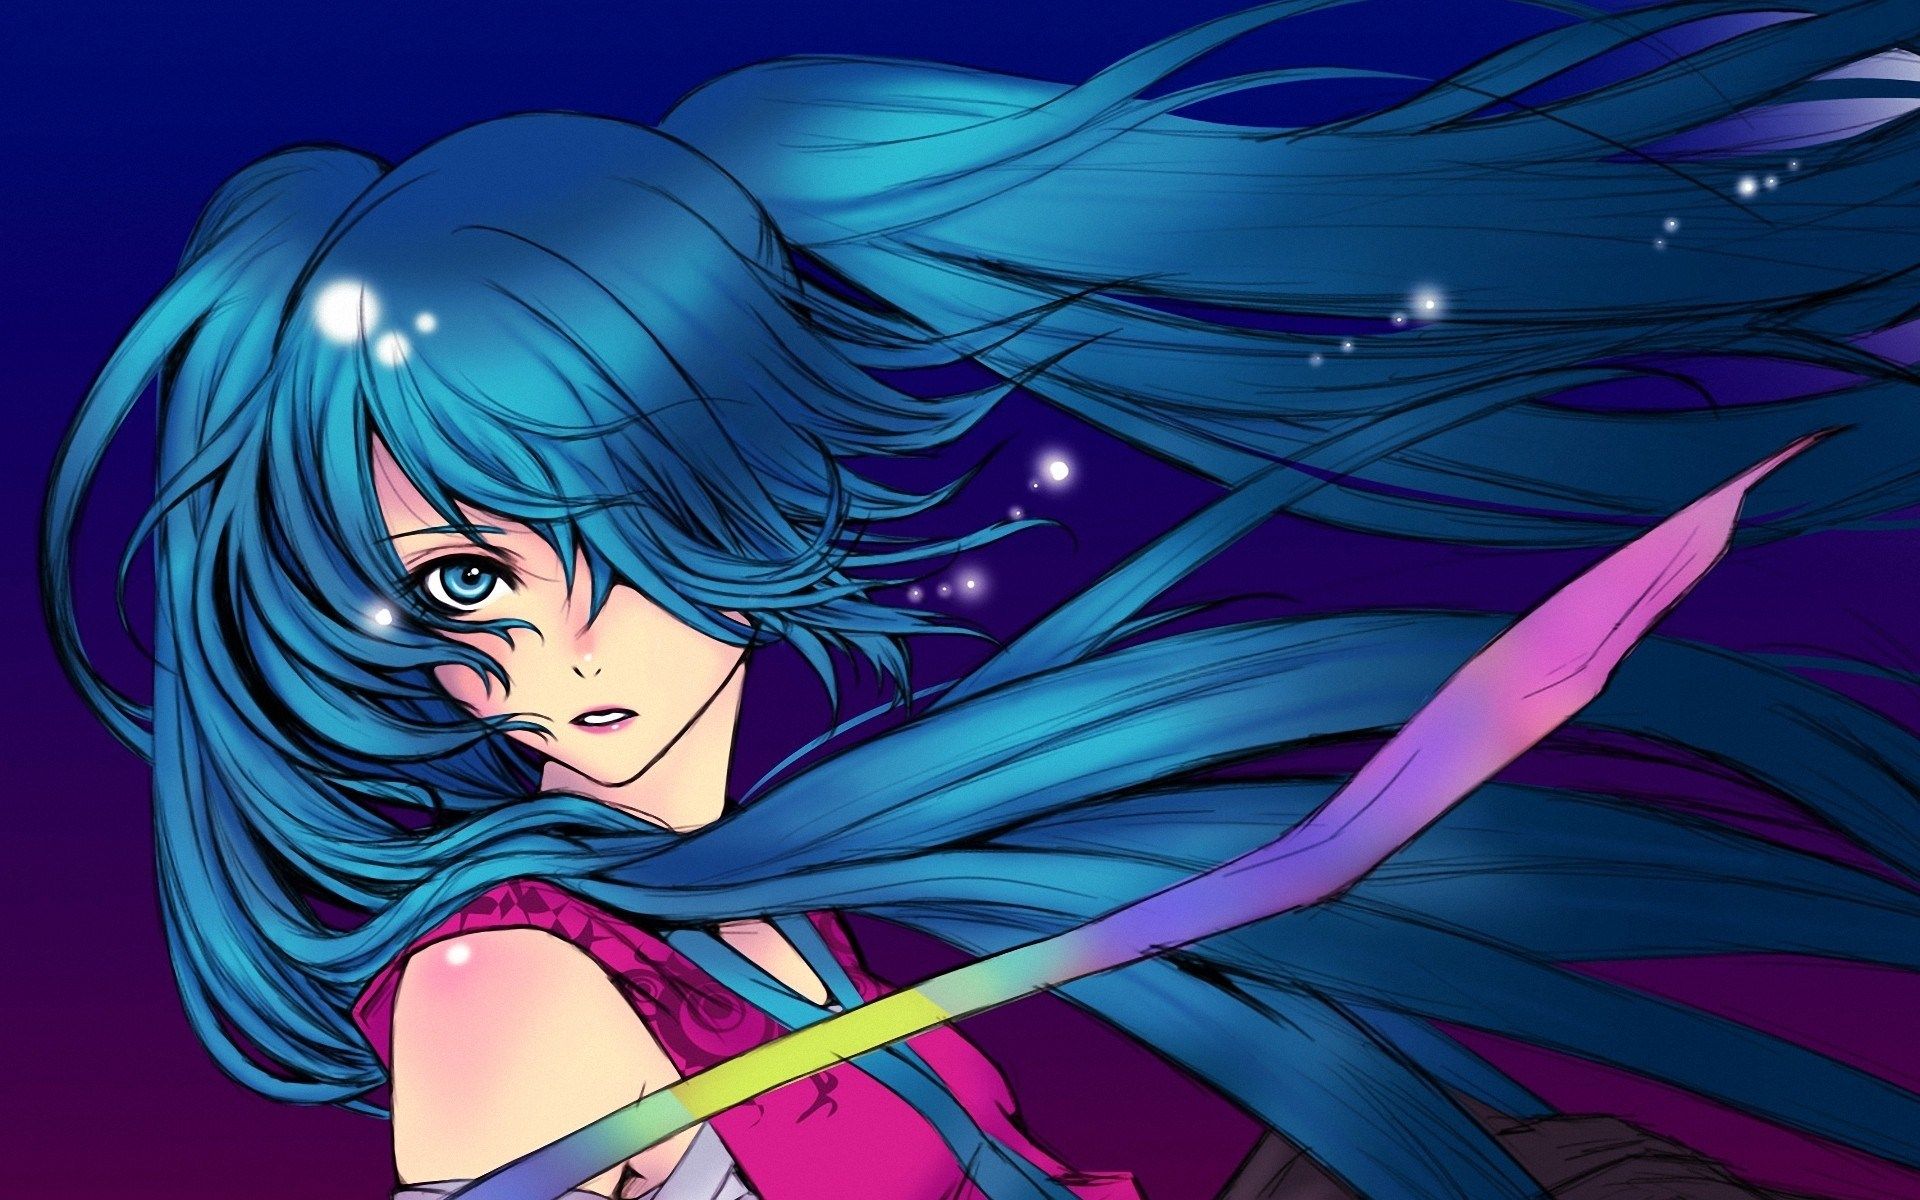 3. "Femboy with Blue Hair" - Anime Fan Art - wide 2